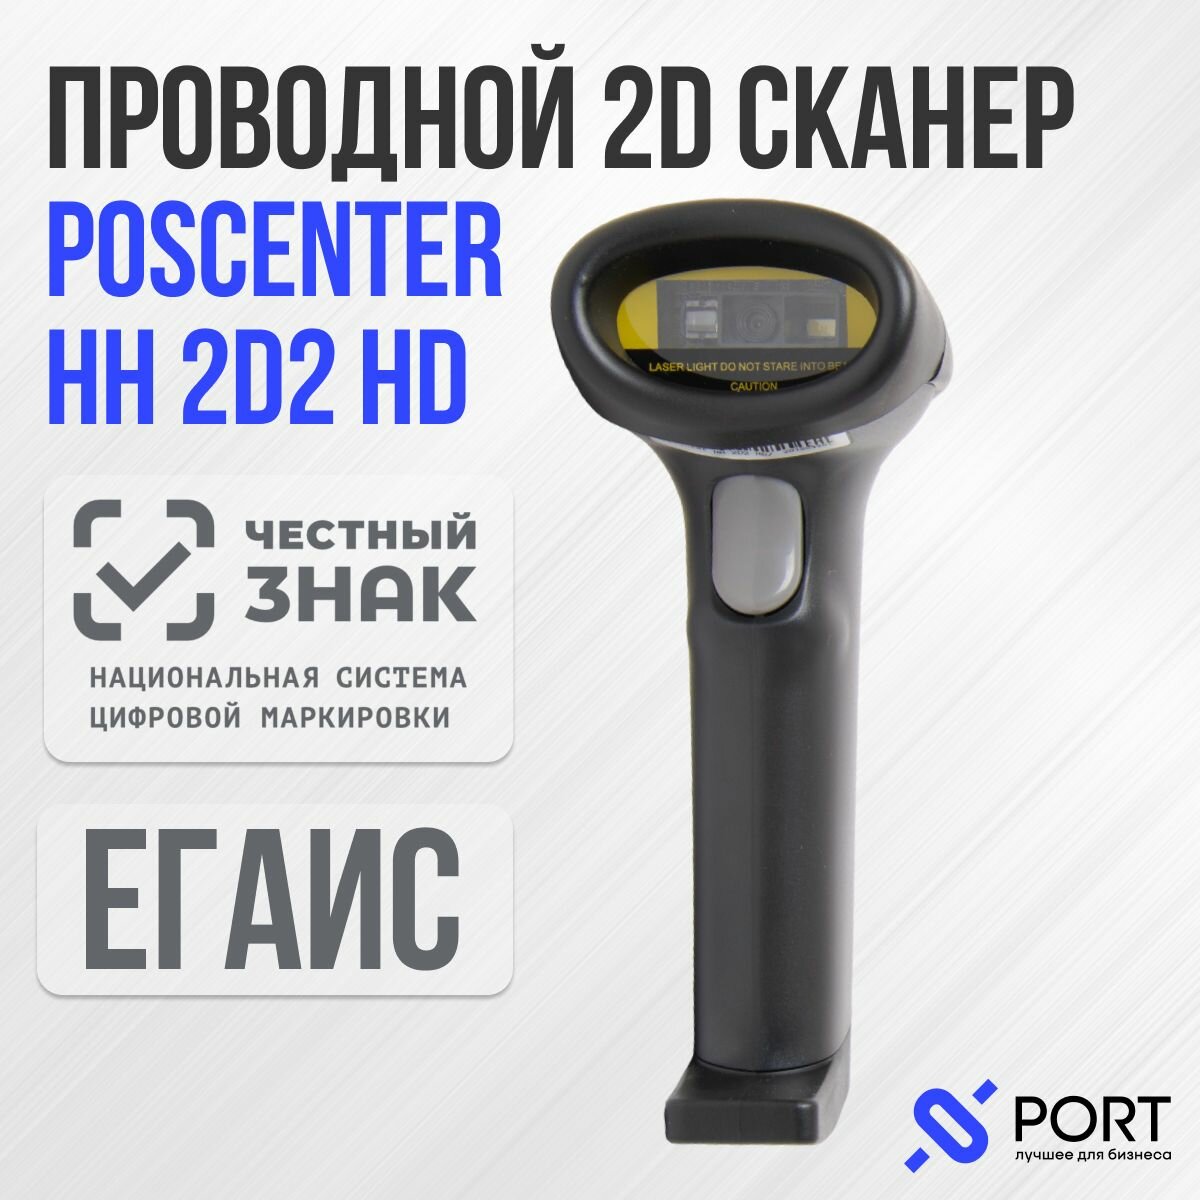 Сканер штрих-кода POScenter HH 2D2 HD, ПВЗ, Честный знак, QR code